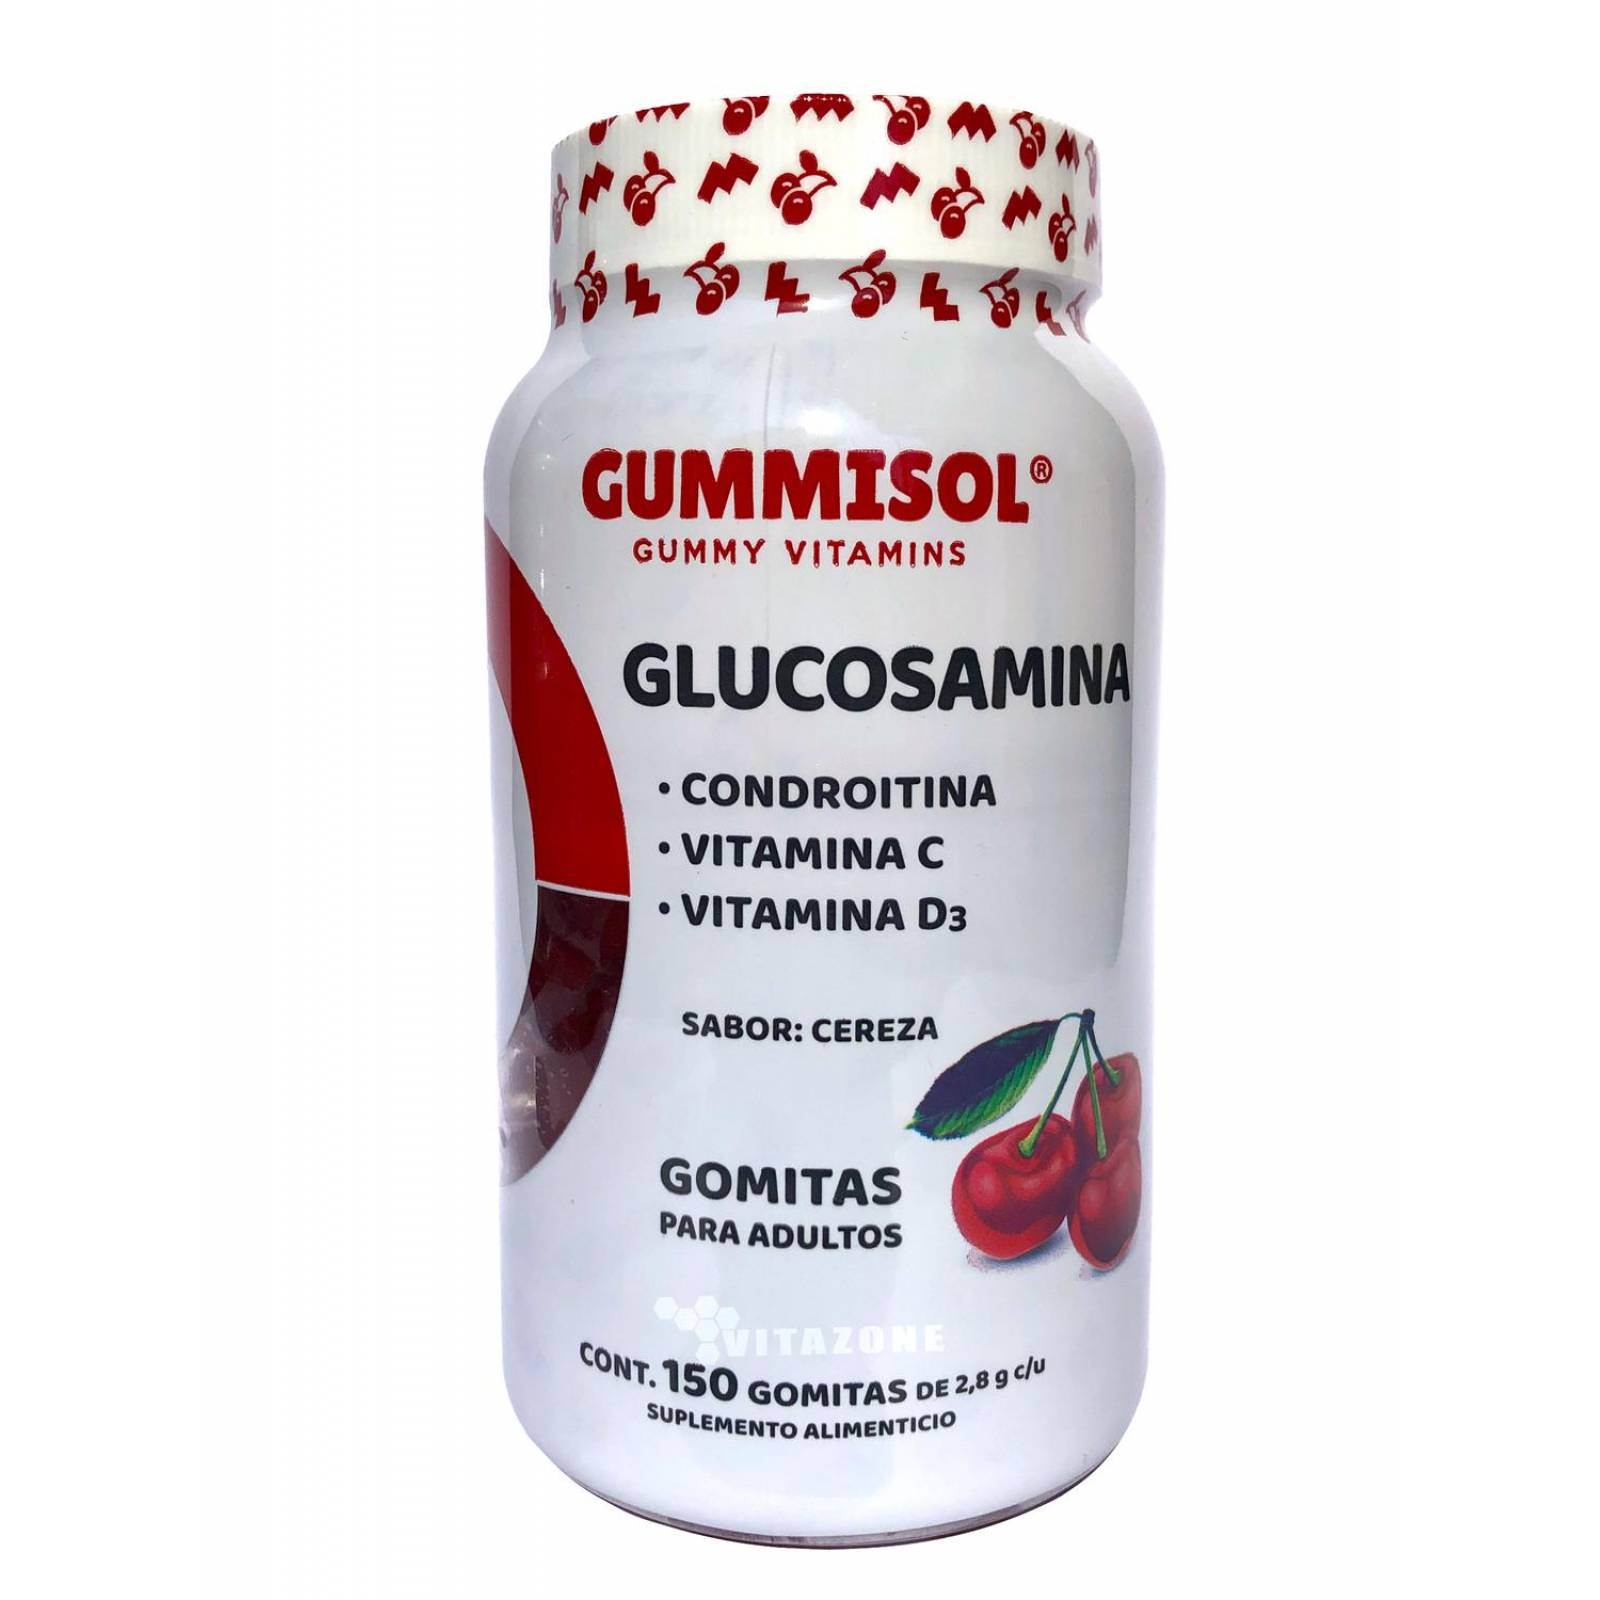 Glucosamina Gummisol 150 Gomitas Condroitina Vitamina D 